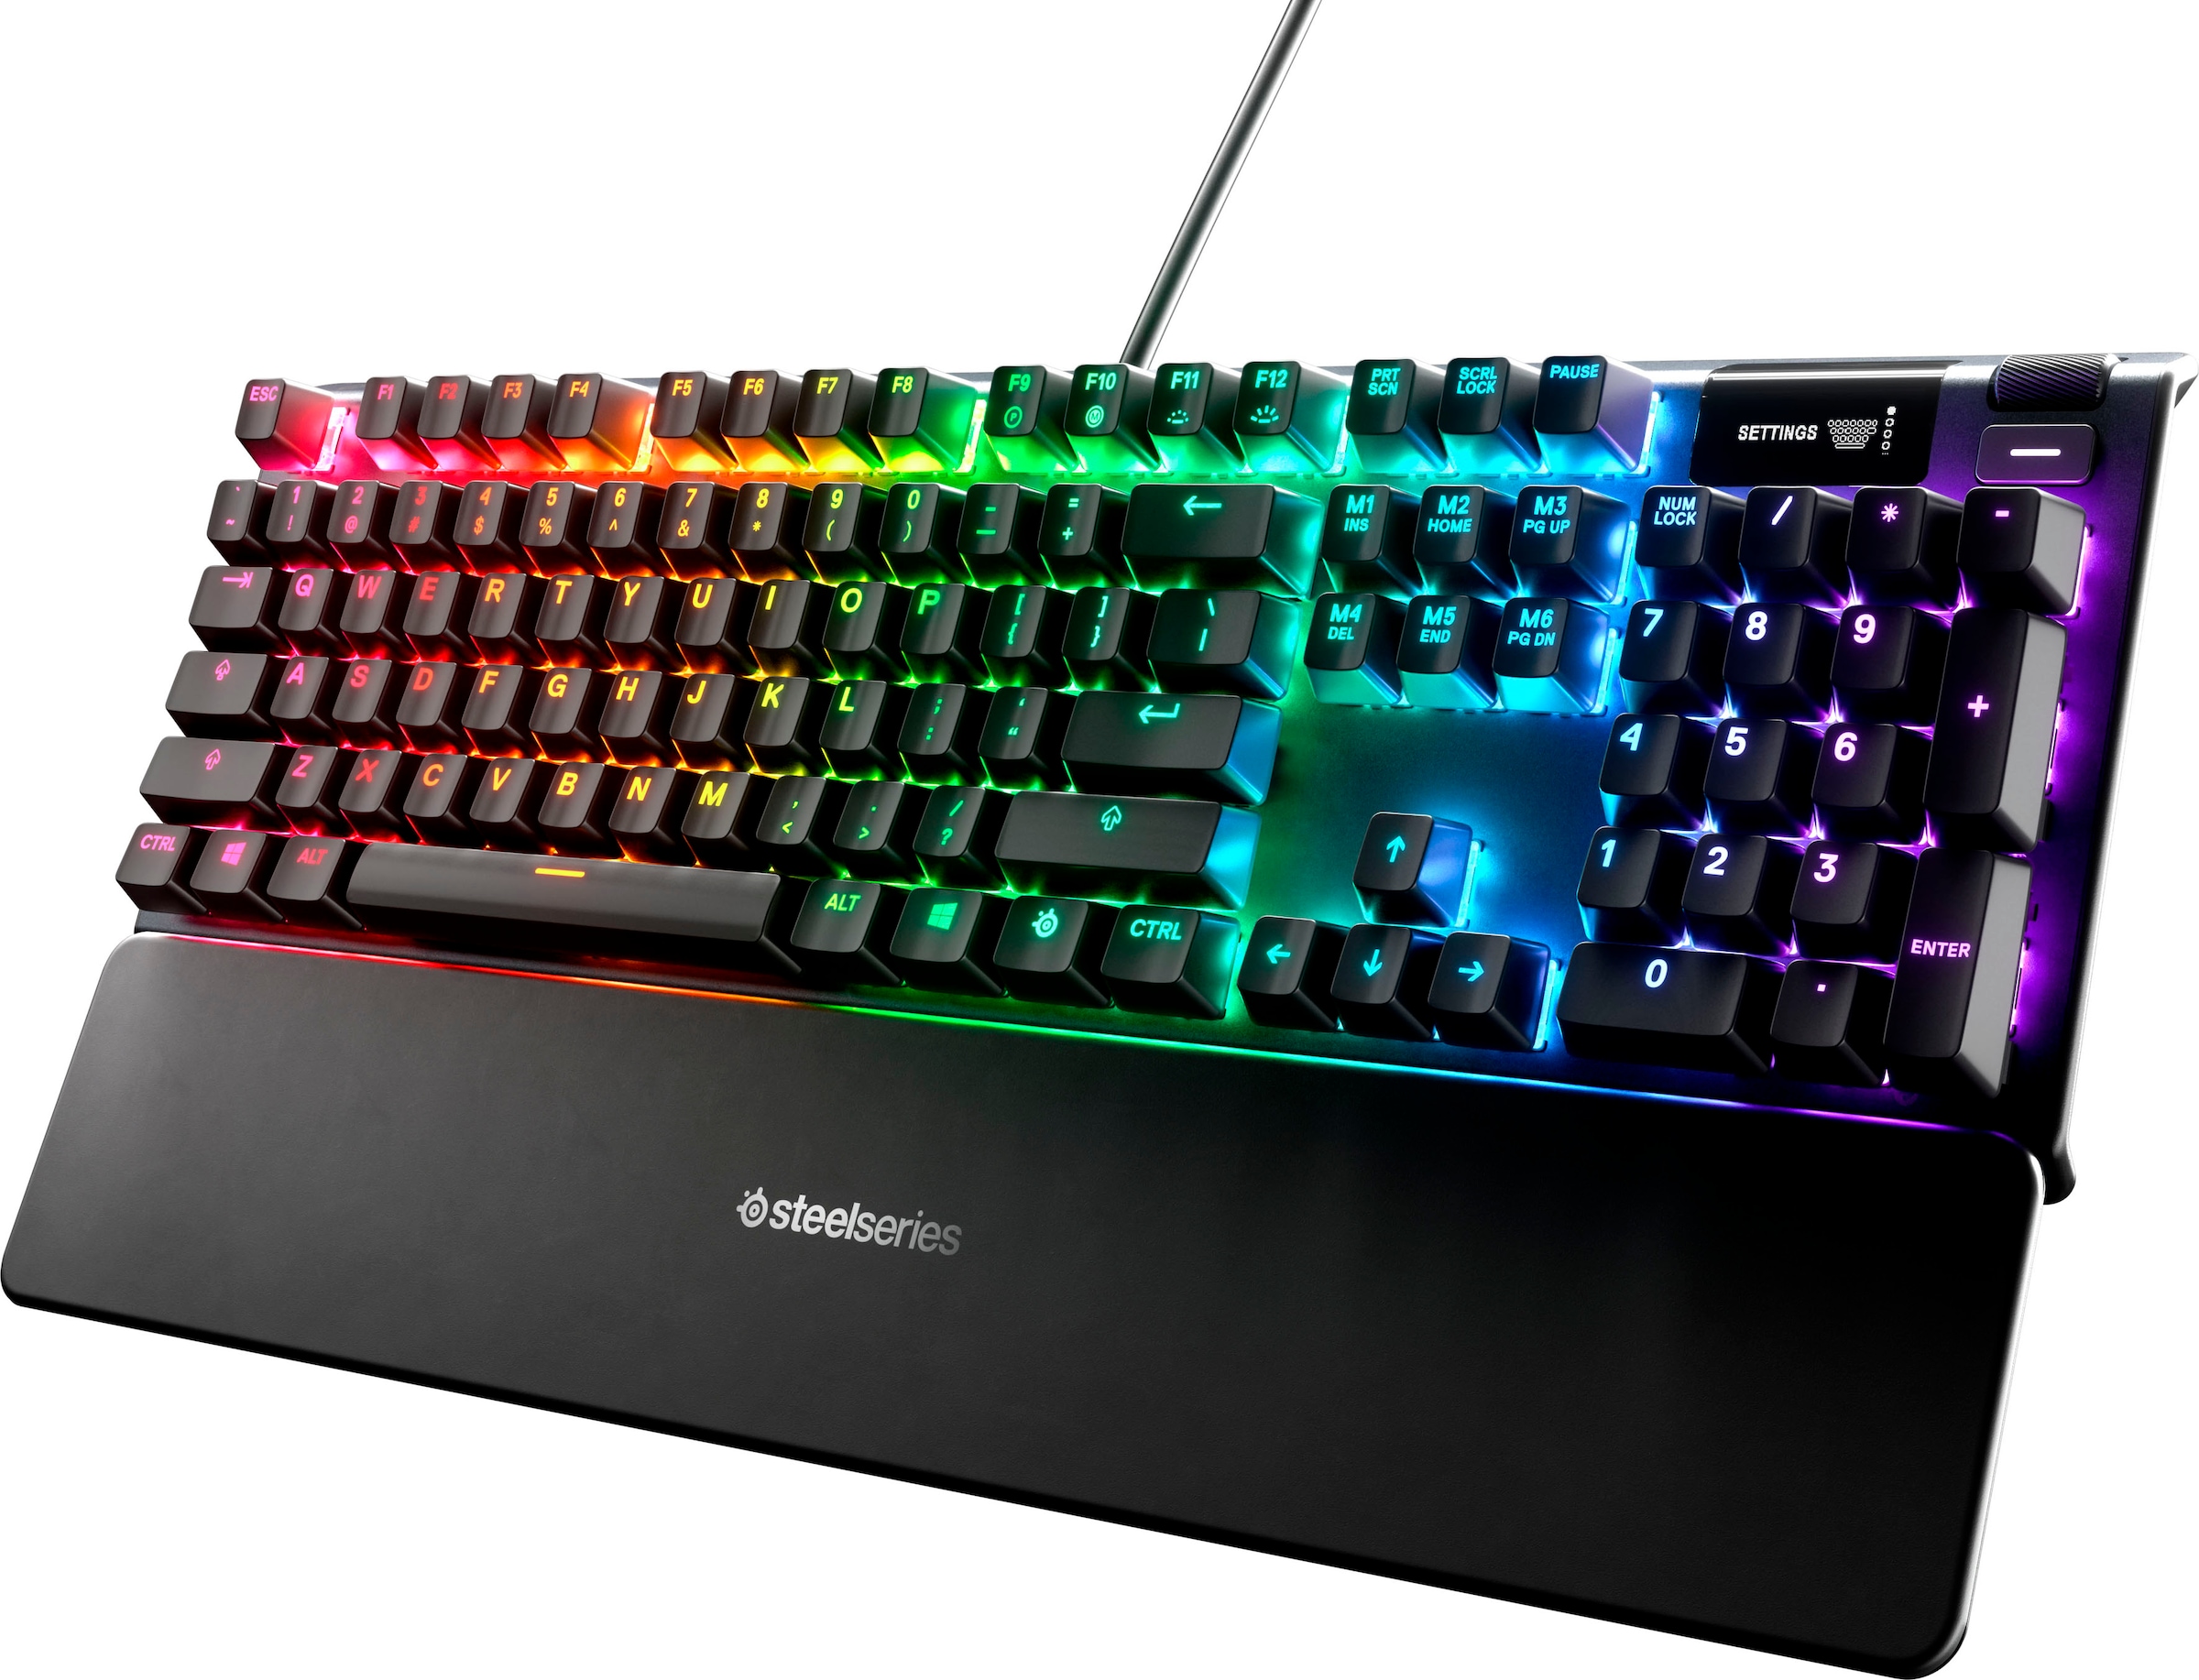 SteelSeries Gaming-Tastatur »Apex 5«, (Handgelenkauflage-Antirutsch-Füsse-ausklappbare Füsse-Smart-Display-Makrotasten), Anti-Ghosting